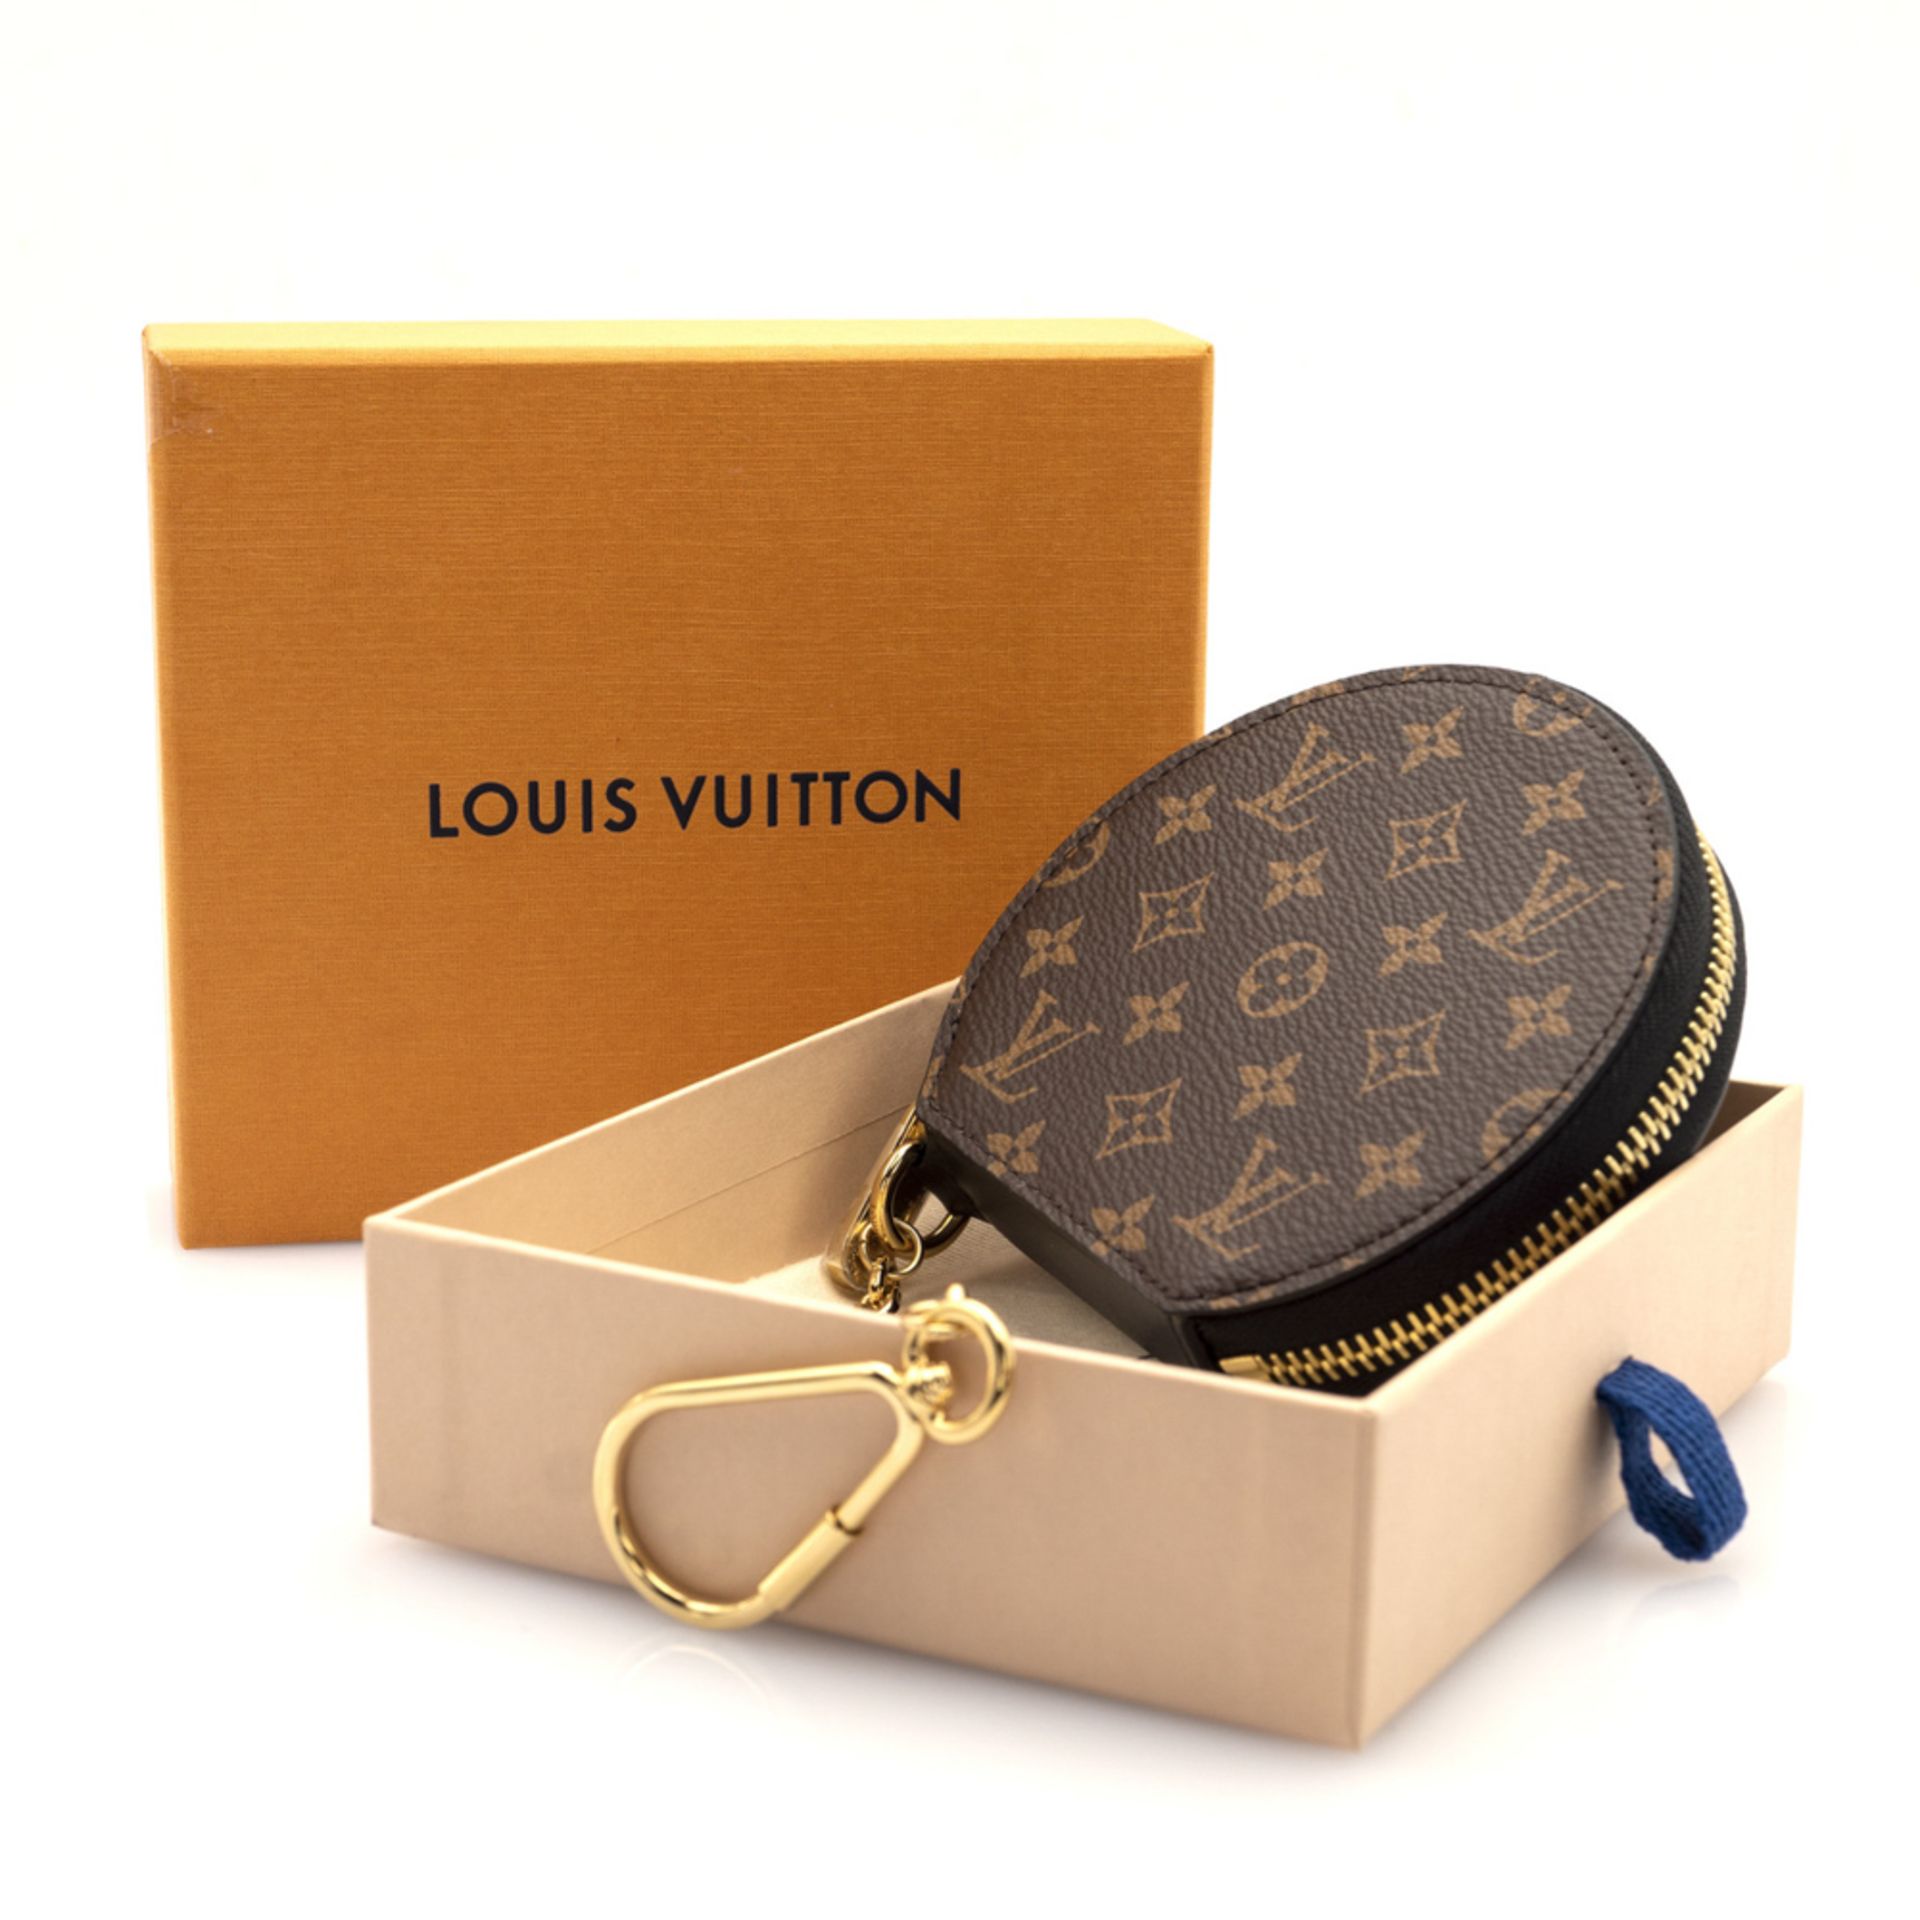 Louis Vuitton, Monogram coin purse 10x11x2,5 cm. - Image 2 of 2